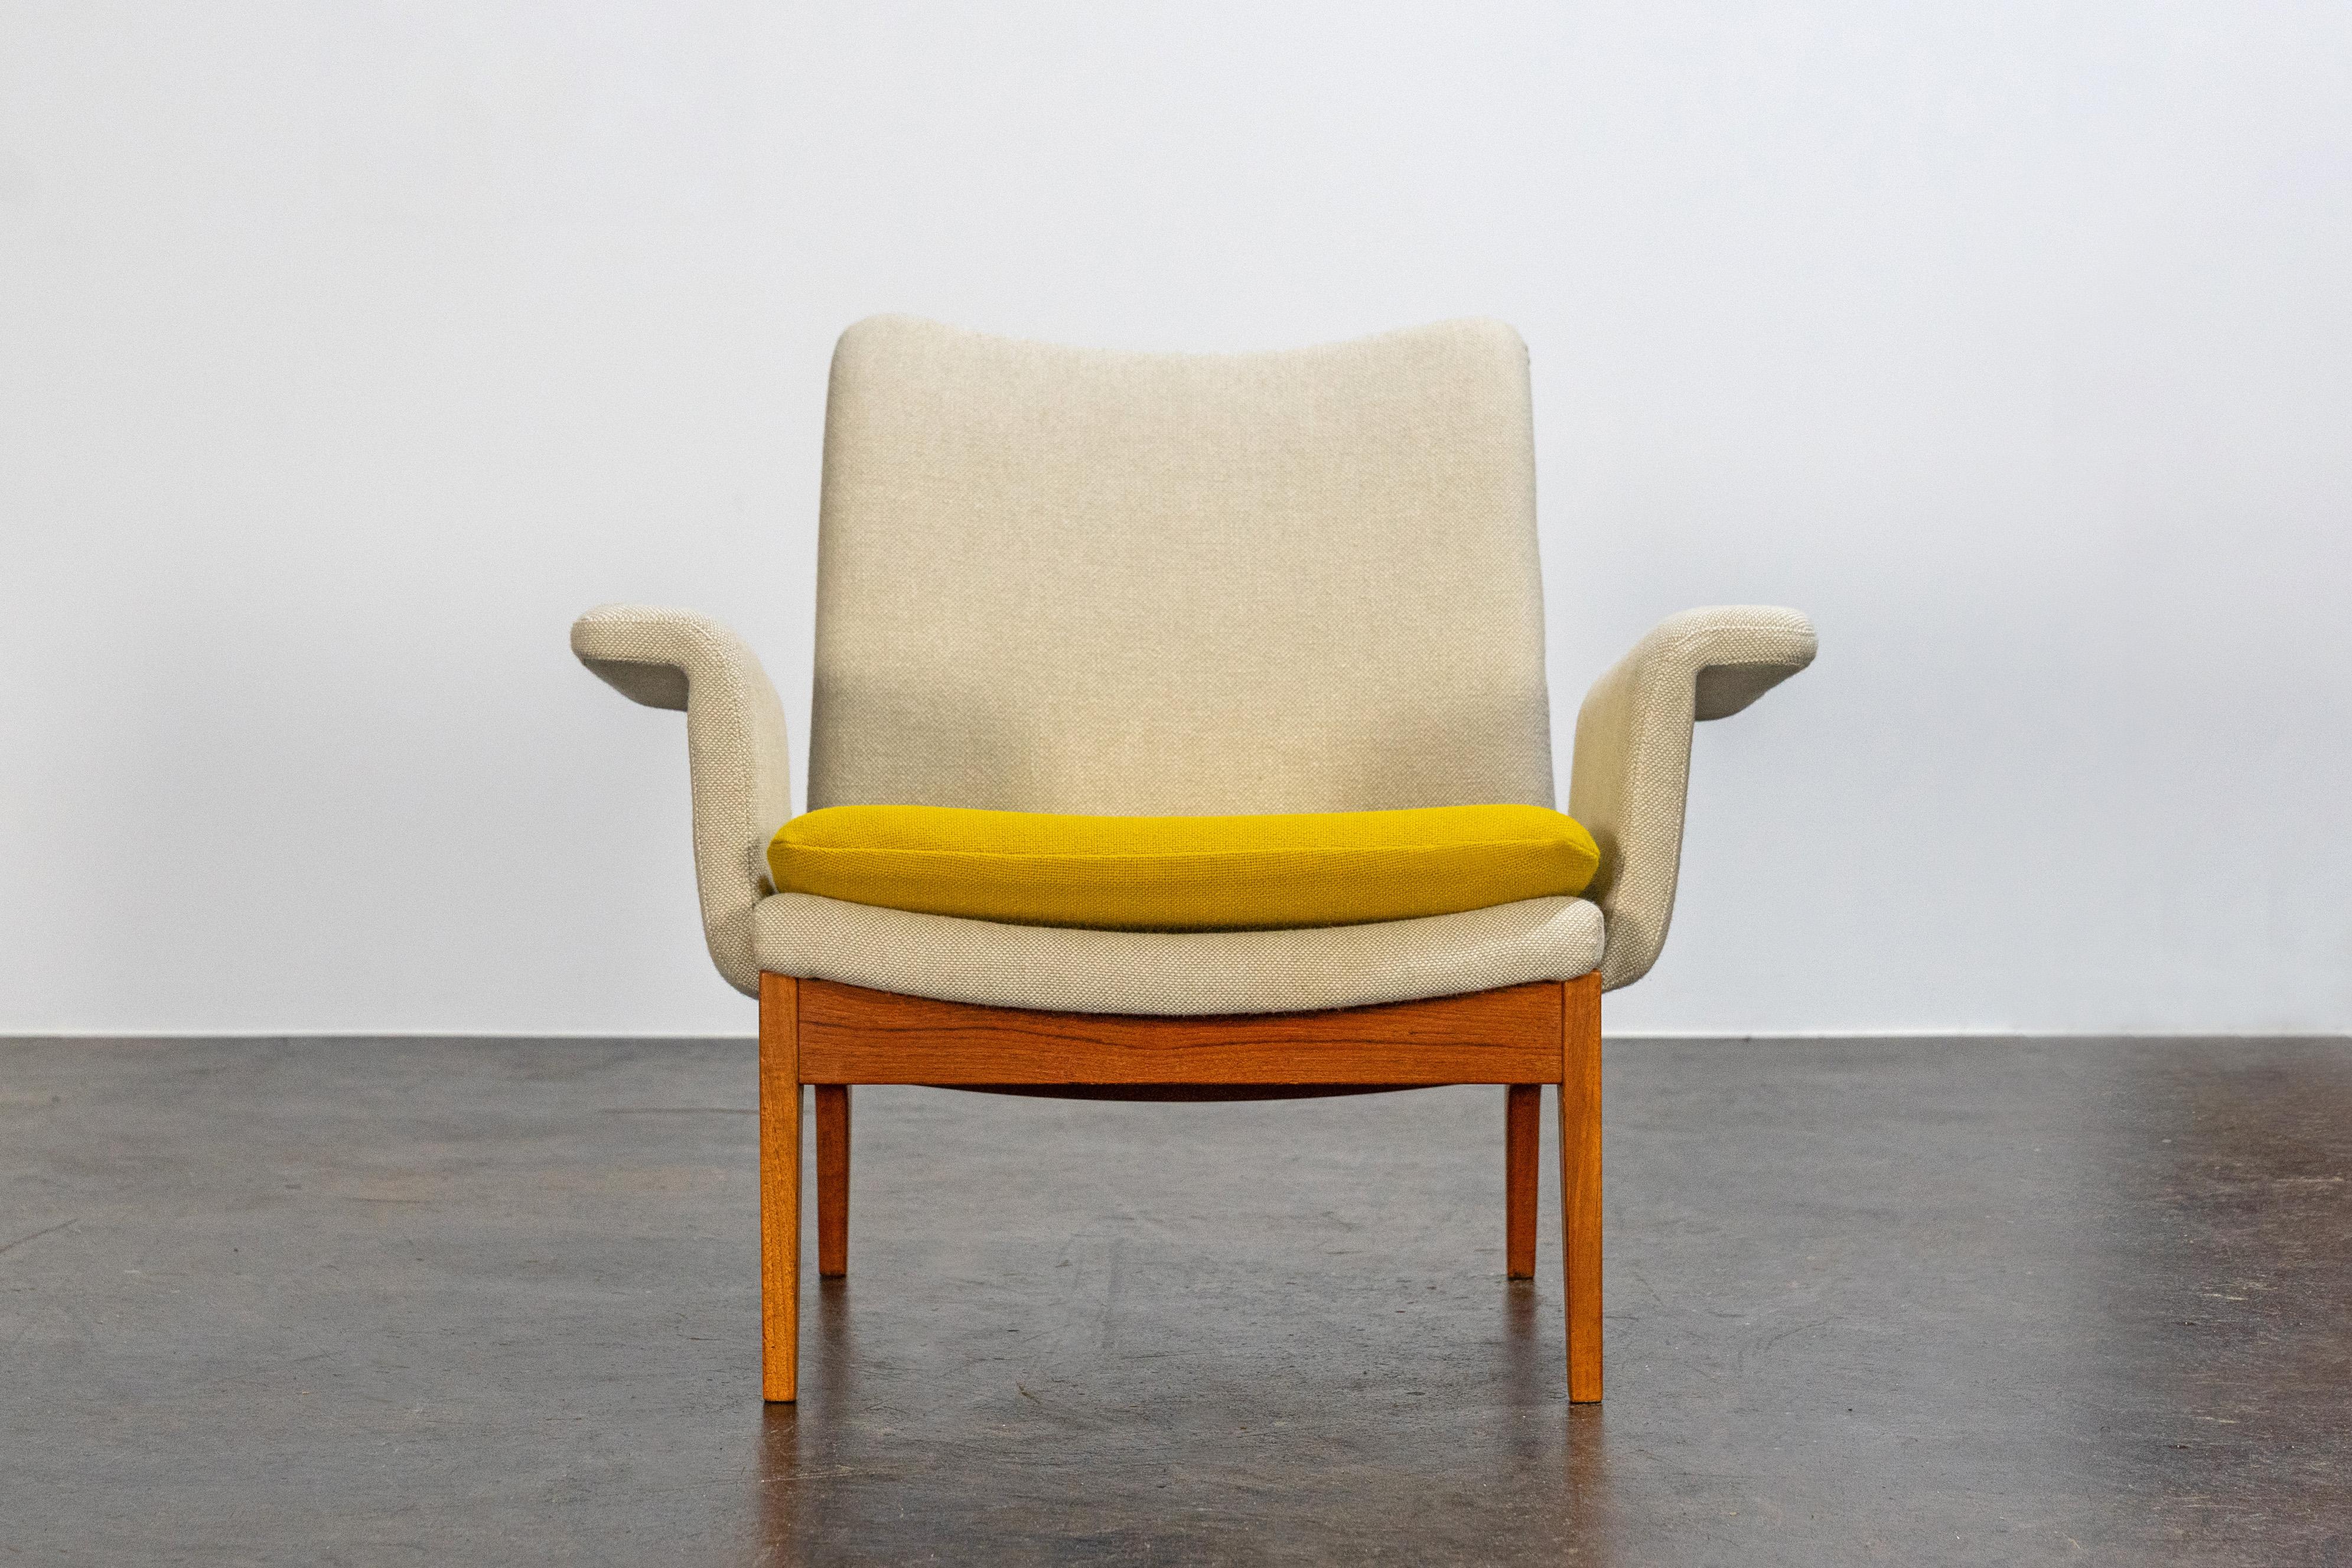 20th Century Scandinavian Easy Chairs by Finn Juhl, Mod. 112 France & Søn Denmark 60s For Sale